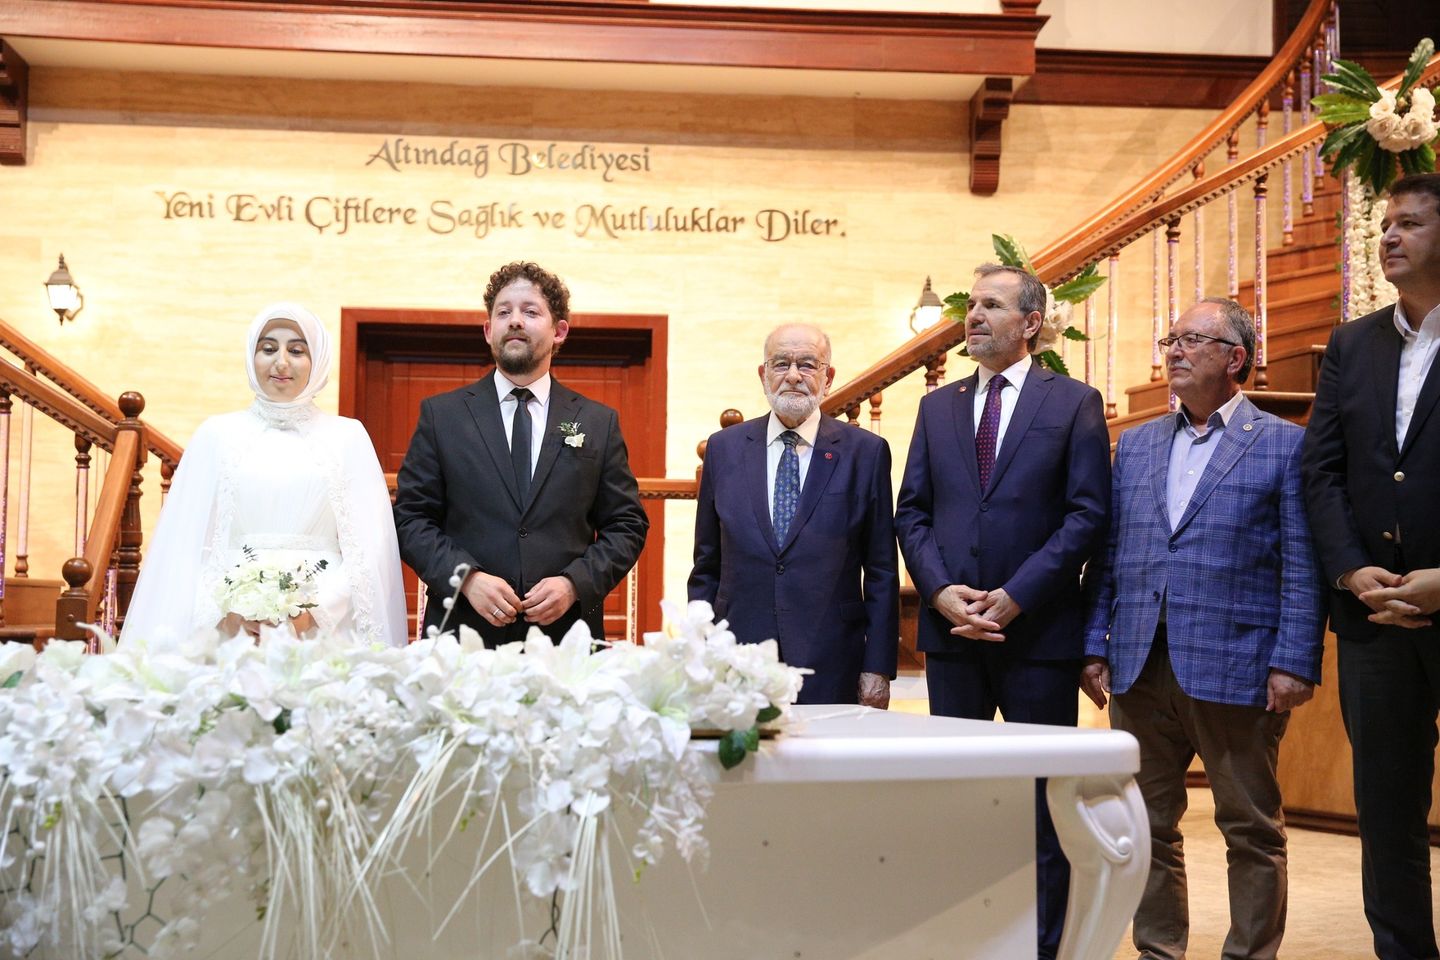 Saadet Partisi Genel Başkanı Temel Karamollaoğlu Düğün Törenine Katıldı